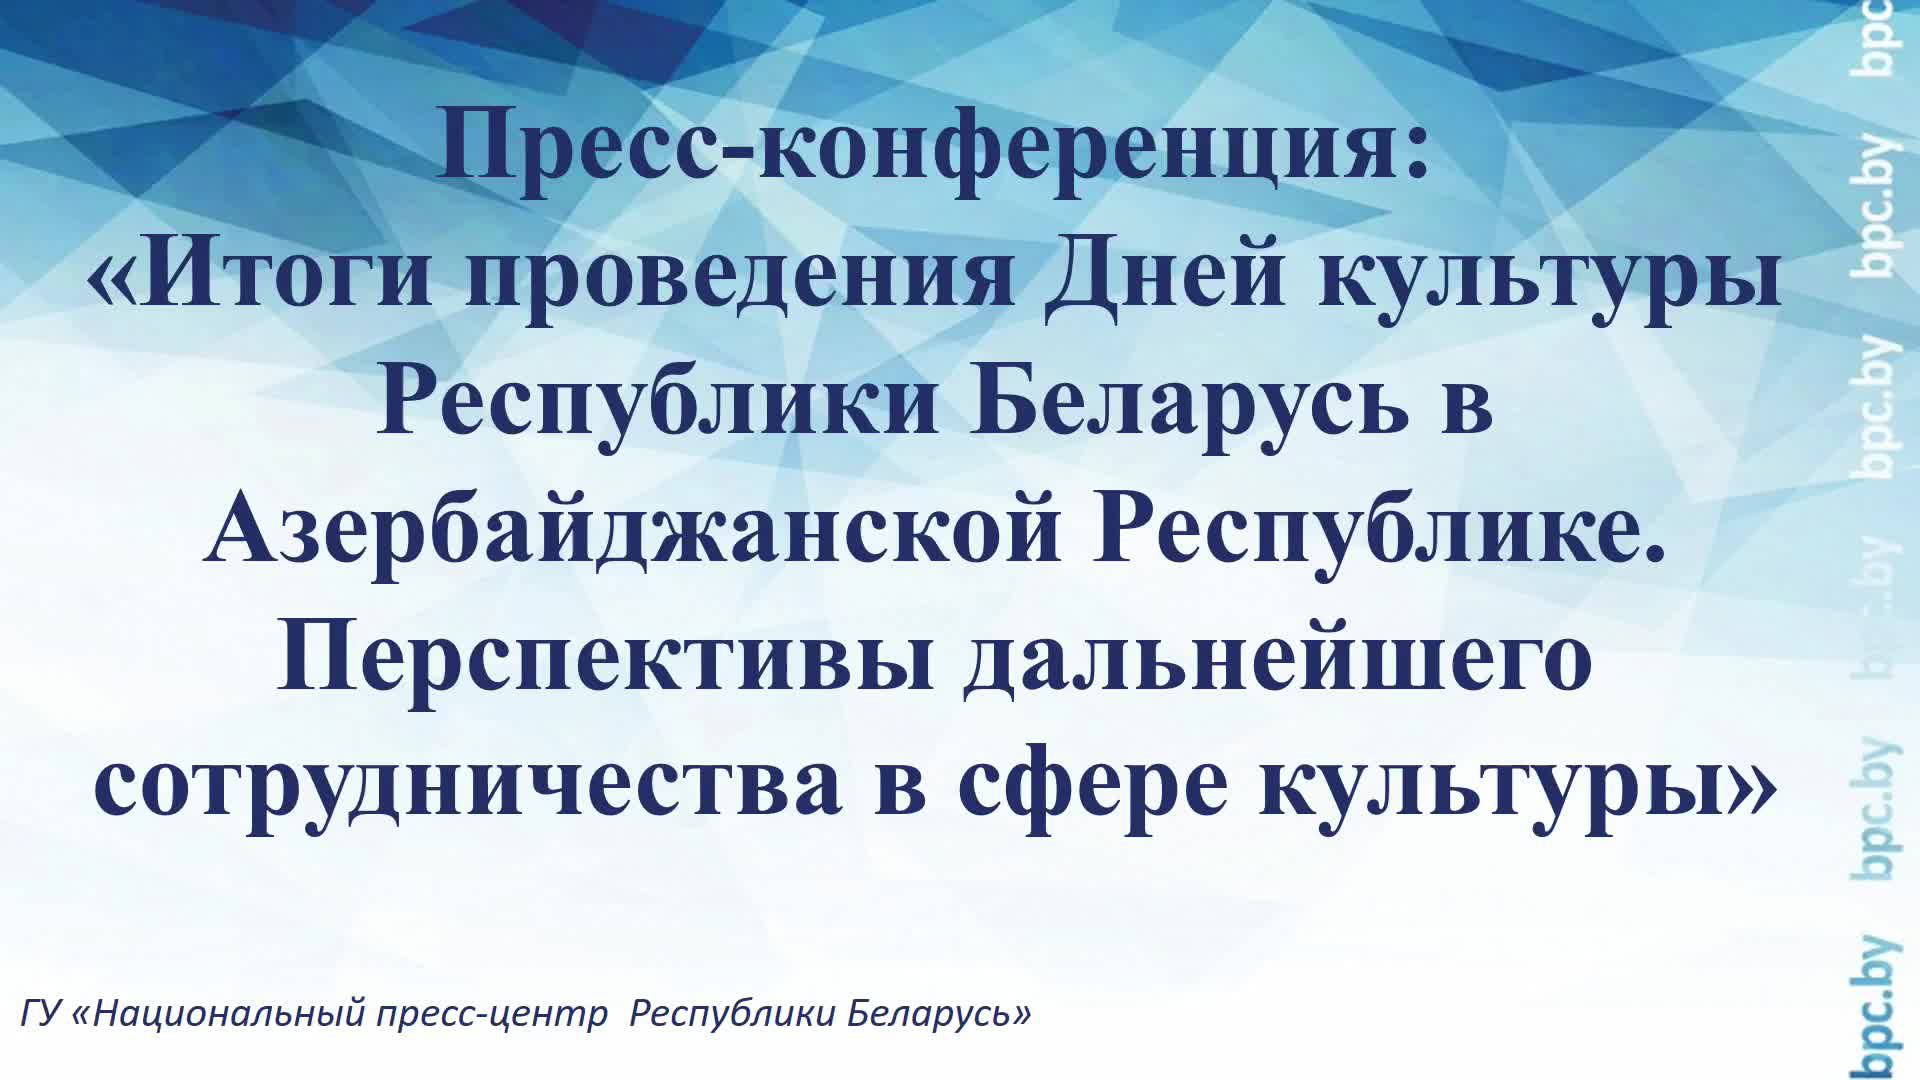 Пресс-конференция: «Итоги проведения Дней культуры Республики Беларусь в Азербайджанской Республике»